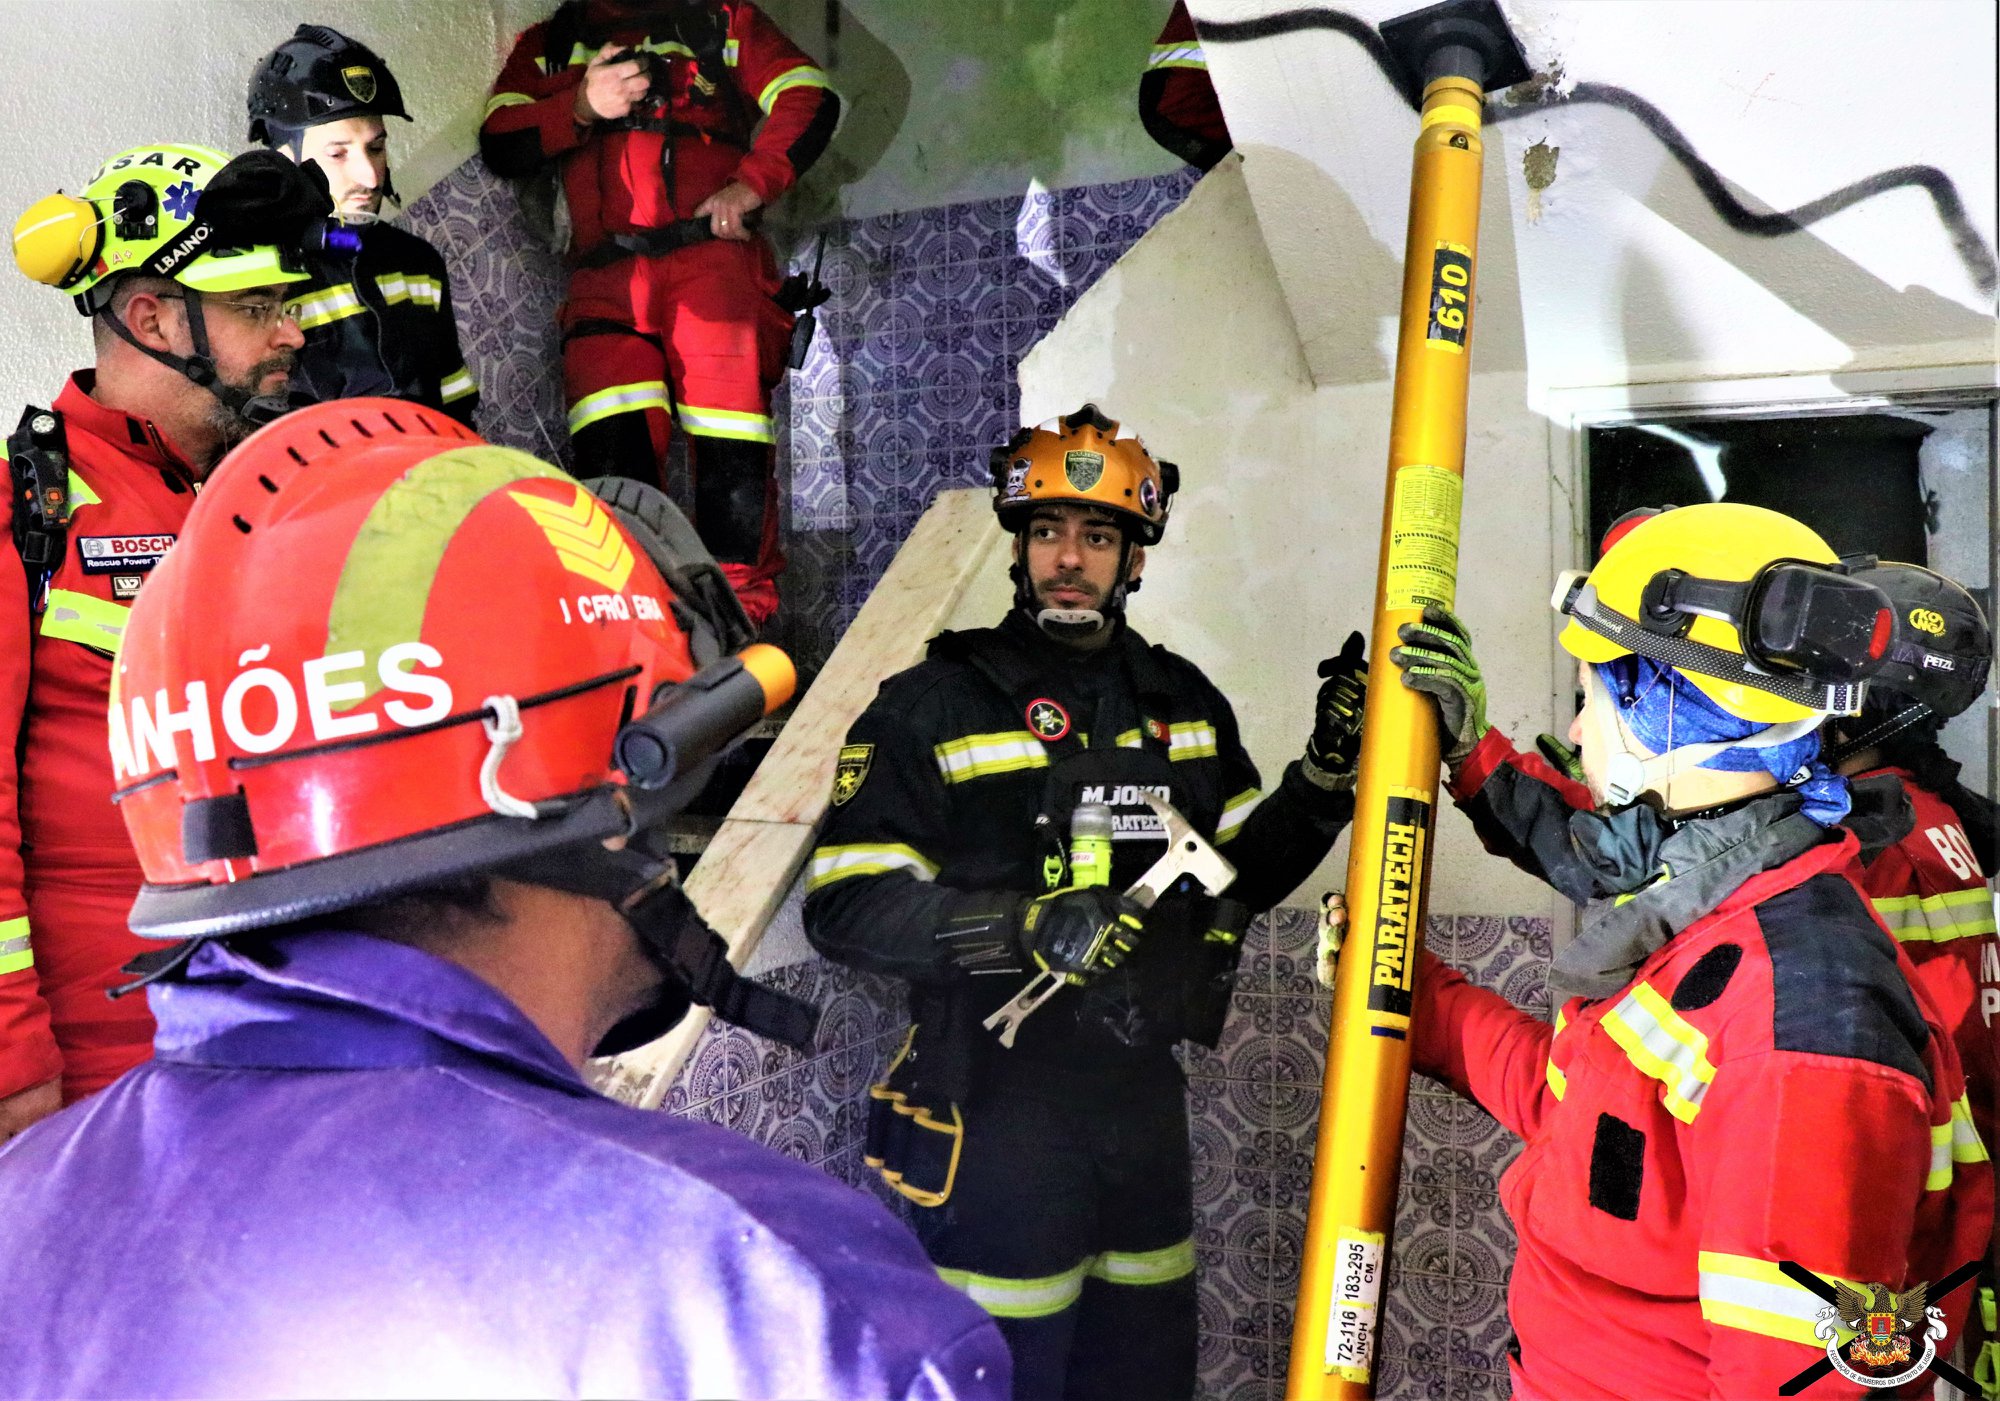 Exercício de busca e resgate em estruturas colapsadas (BREC) realizado na Quinta de São Gião – Cabeço de Montachique, tendo envolvido alguns dos Corpos de Bombeiros do Concelho de Loures.